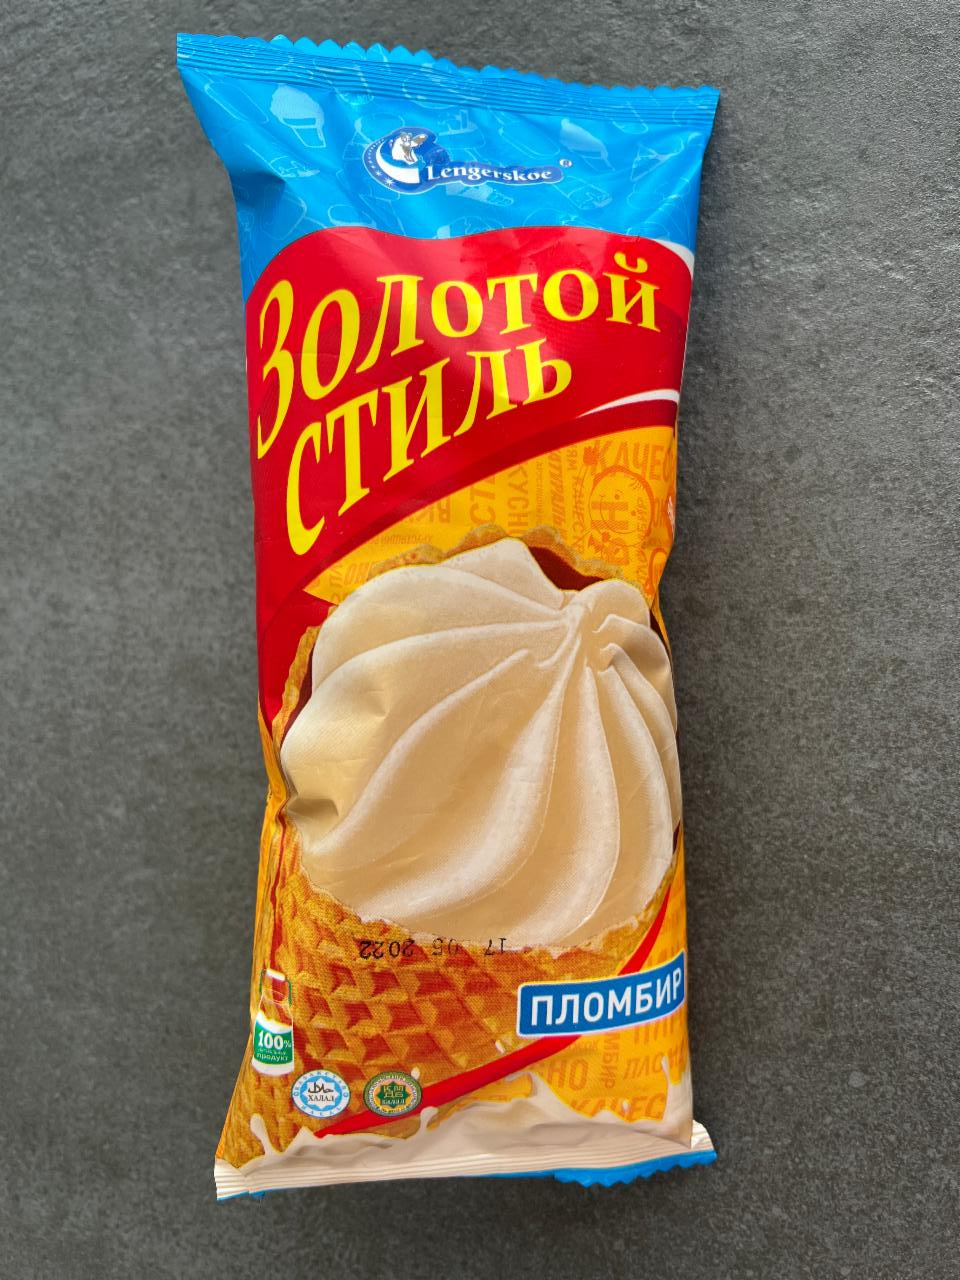 Фото - Мороженое рожок Золотой стиль пломбир Lengerskoe